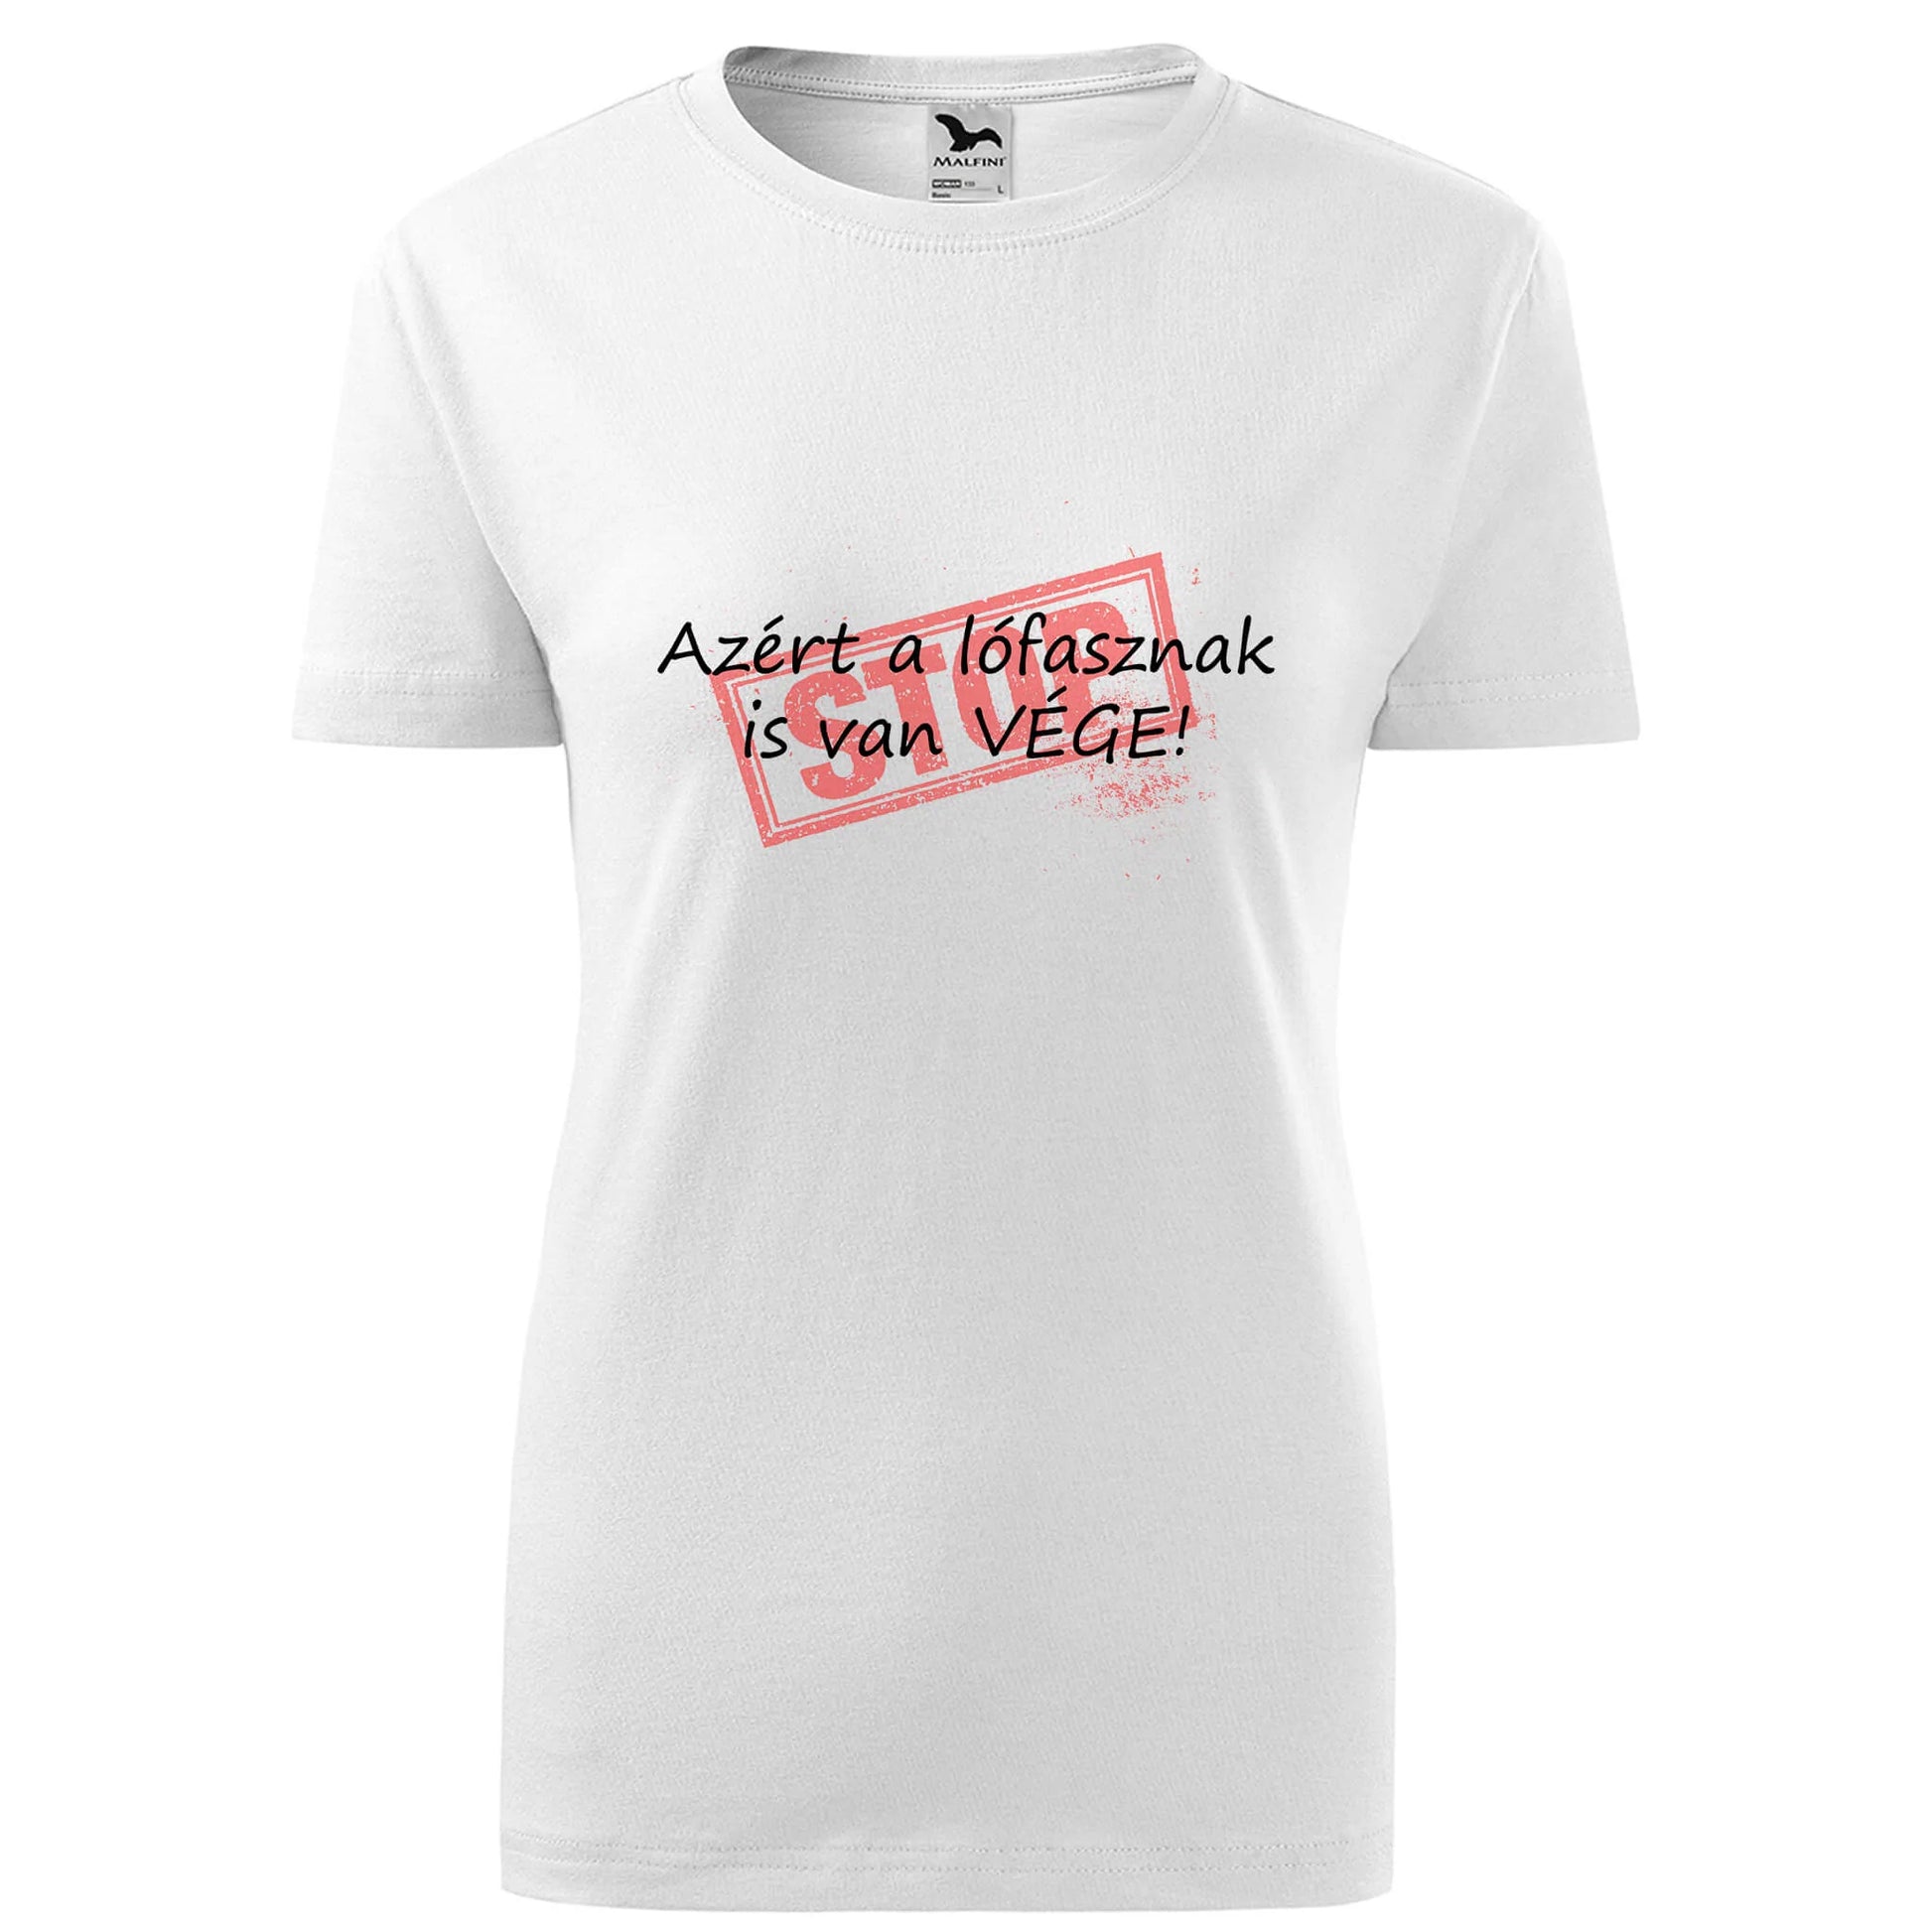 Stop lofasznak is van vege t-shirt - rvdesignprint